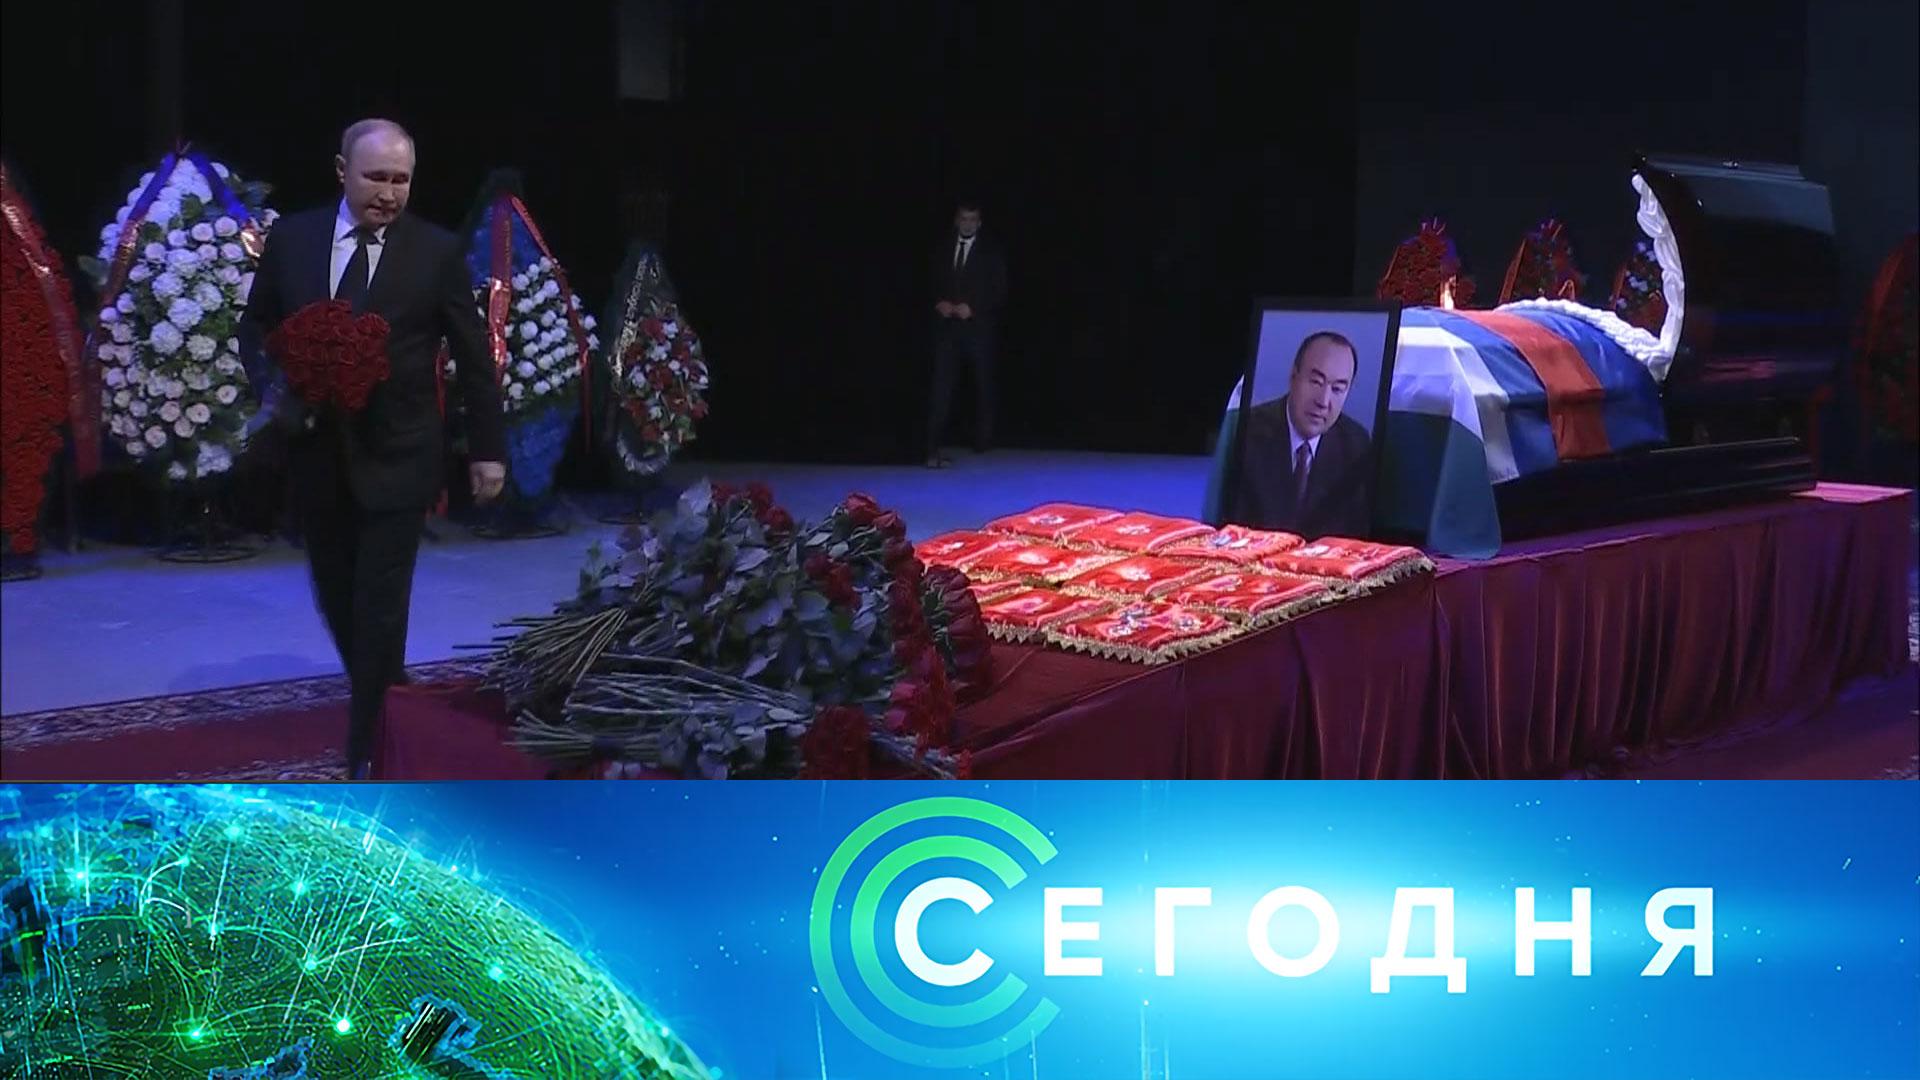 Похорони президента. Церемония прощания с Муртазой Рахимовым.